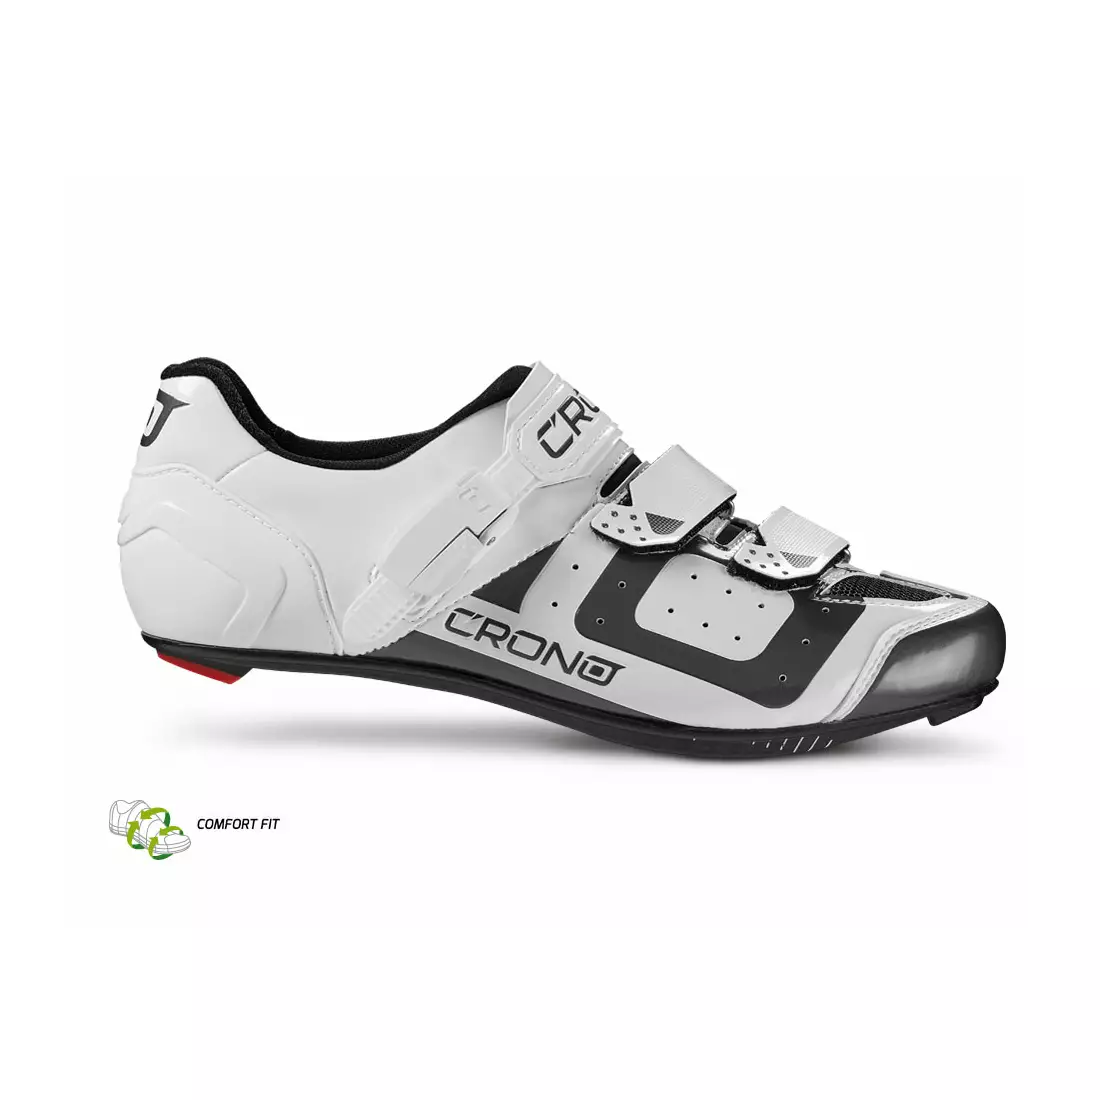 CRONO CR3 nylon - road cycling shoes, white